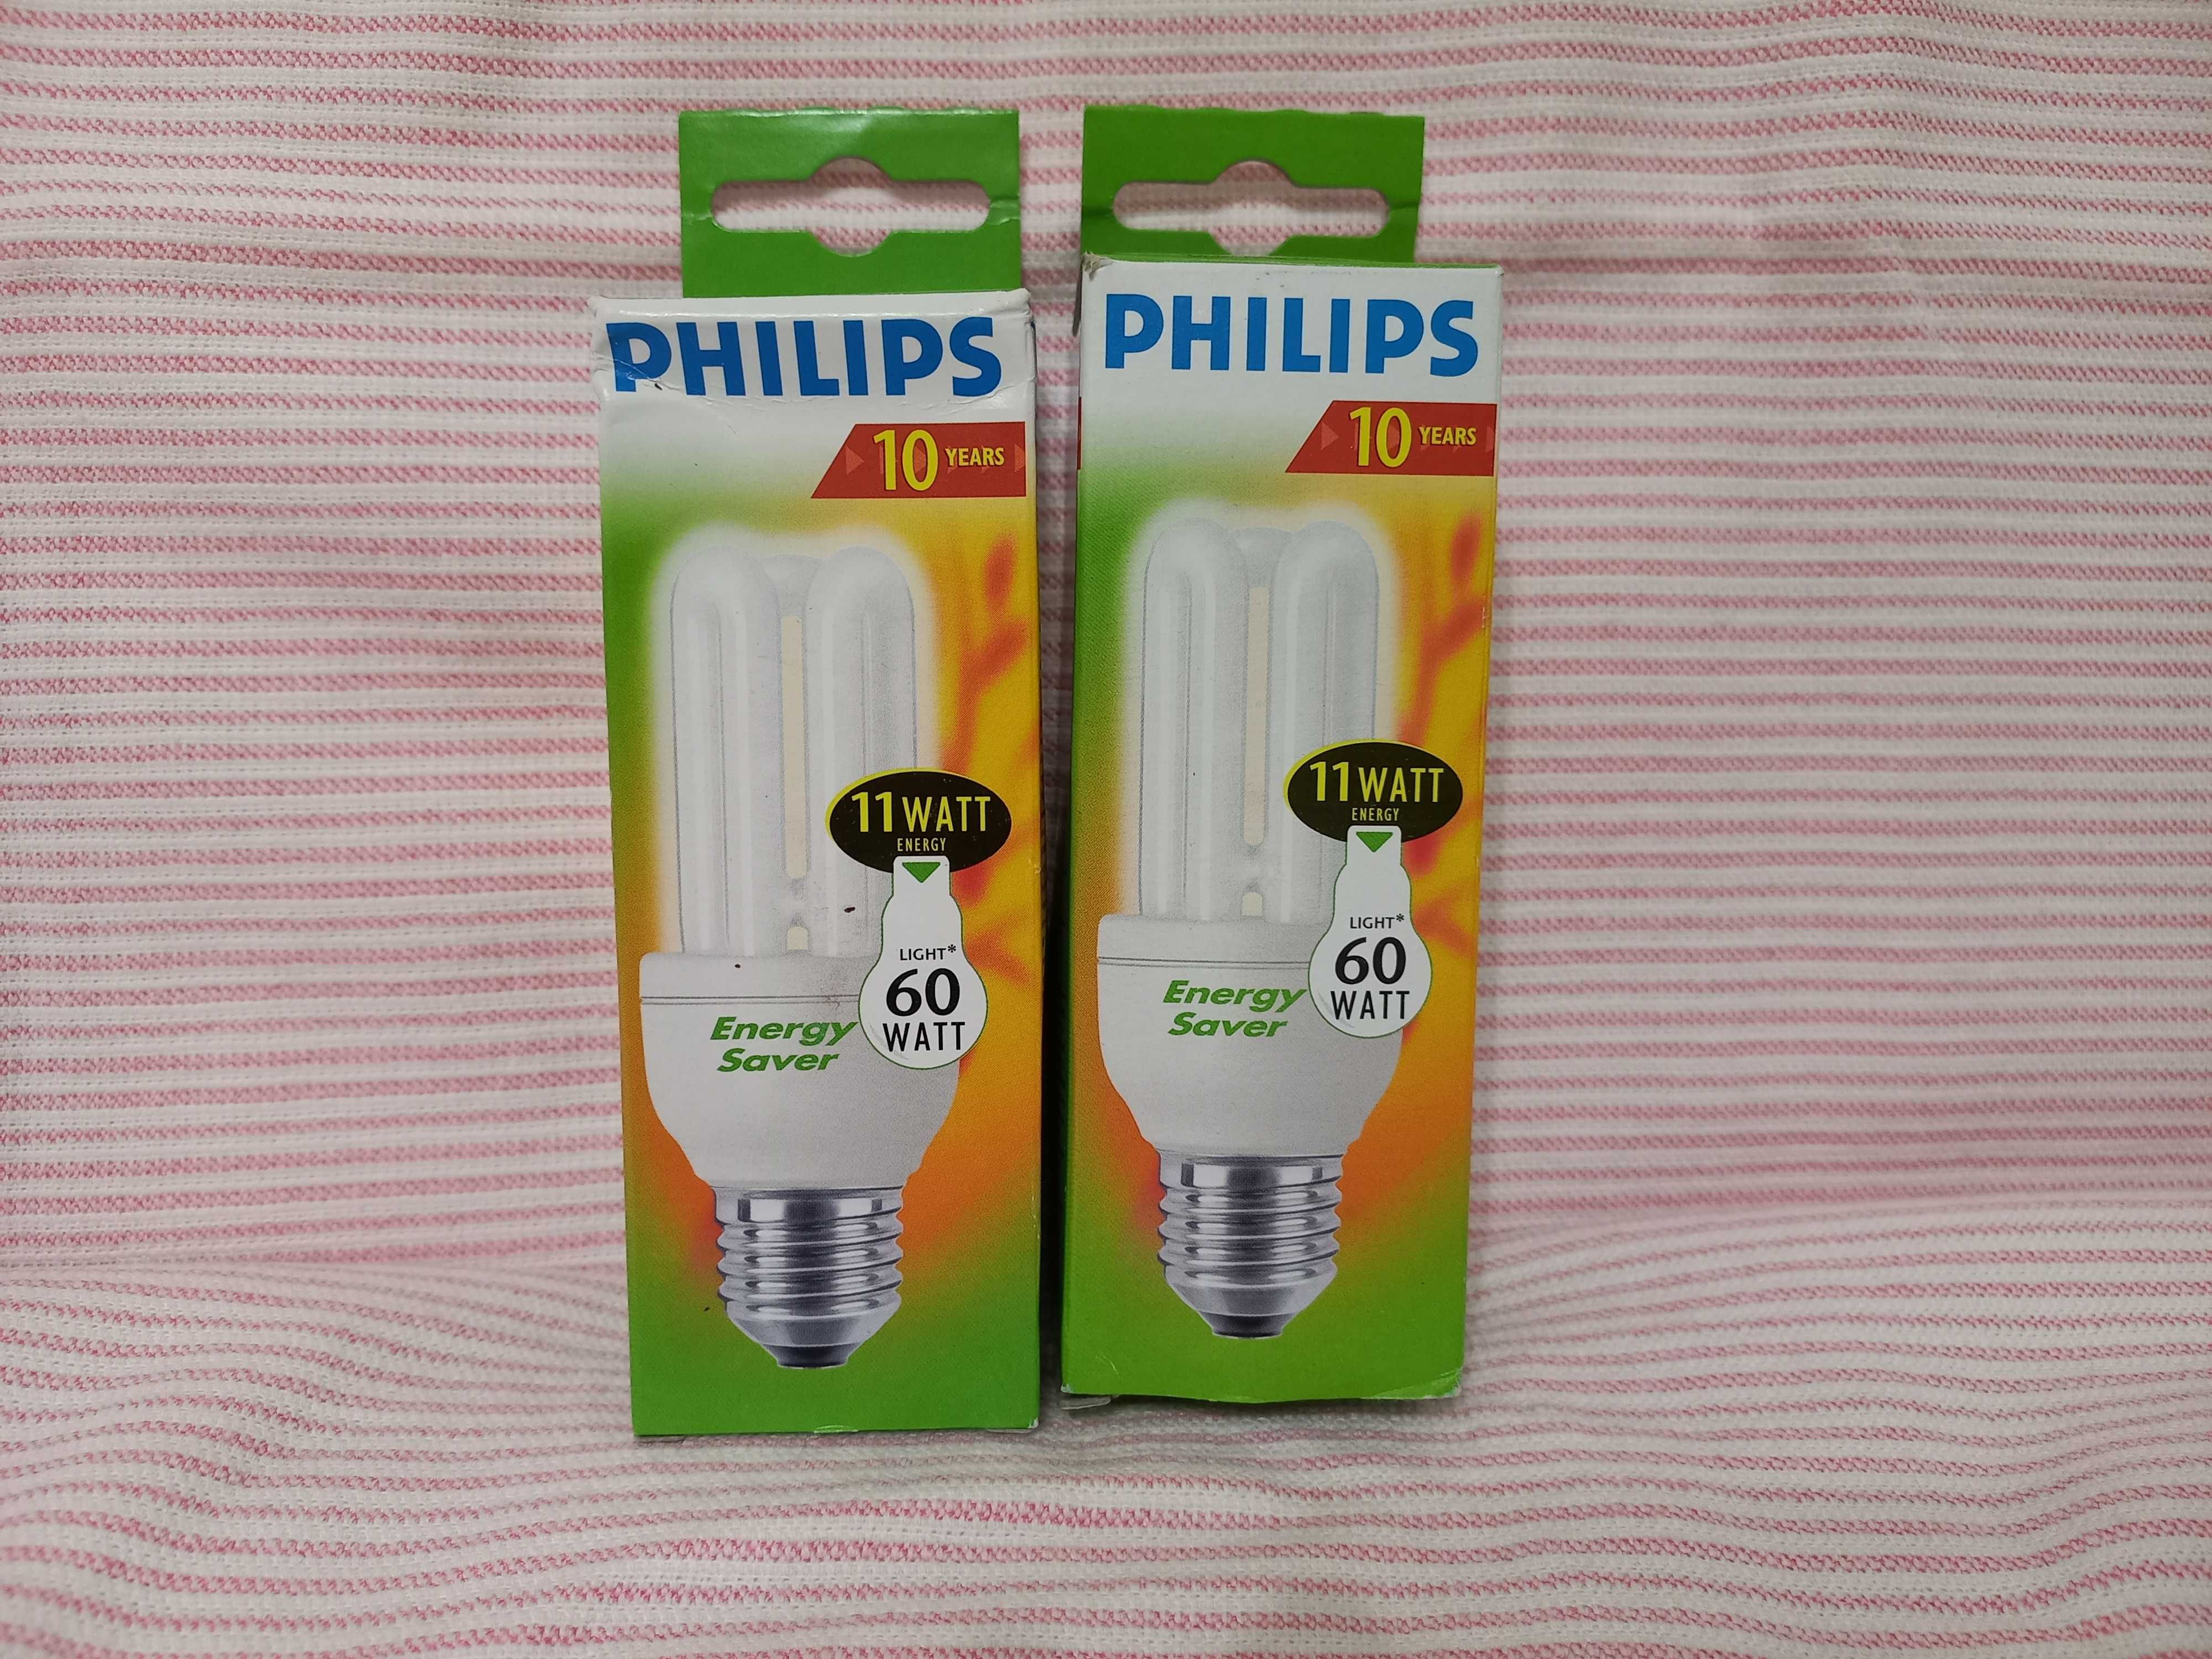 Лампочки   Philips  60  watt,   10  років  гарантії.